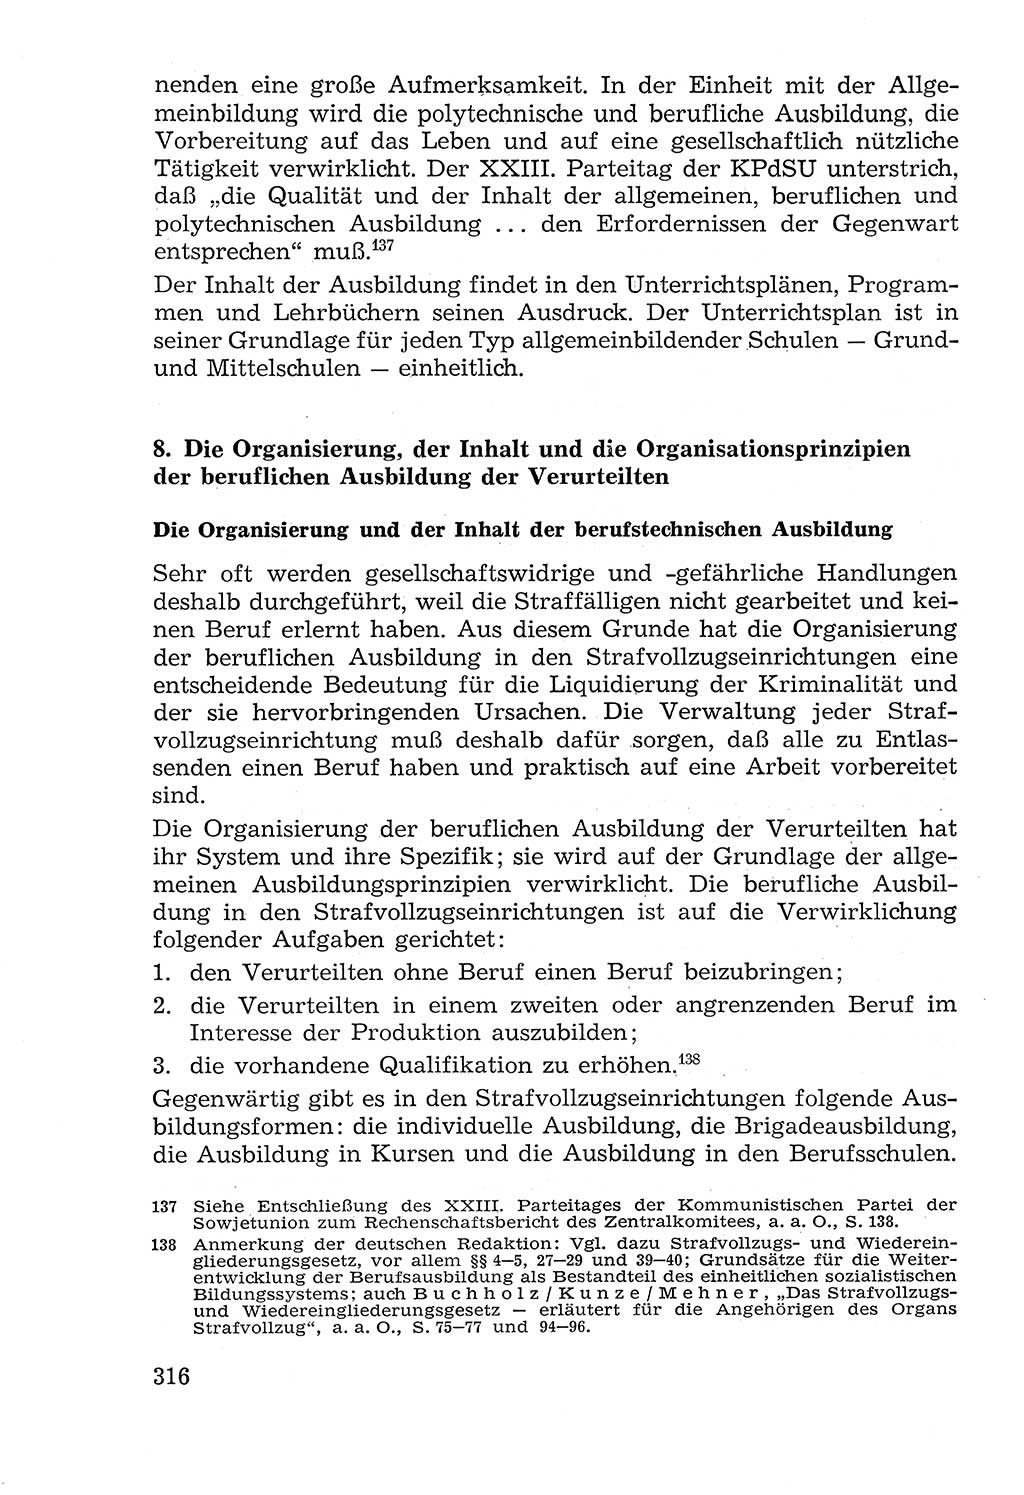 Lehrbuch der Strafvollzugspädagogik [Deutsche Demokratische Republik (DDR)] 1969, Seite 316 (Lb. SV-Pd. DDR 1969, S. 316)